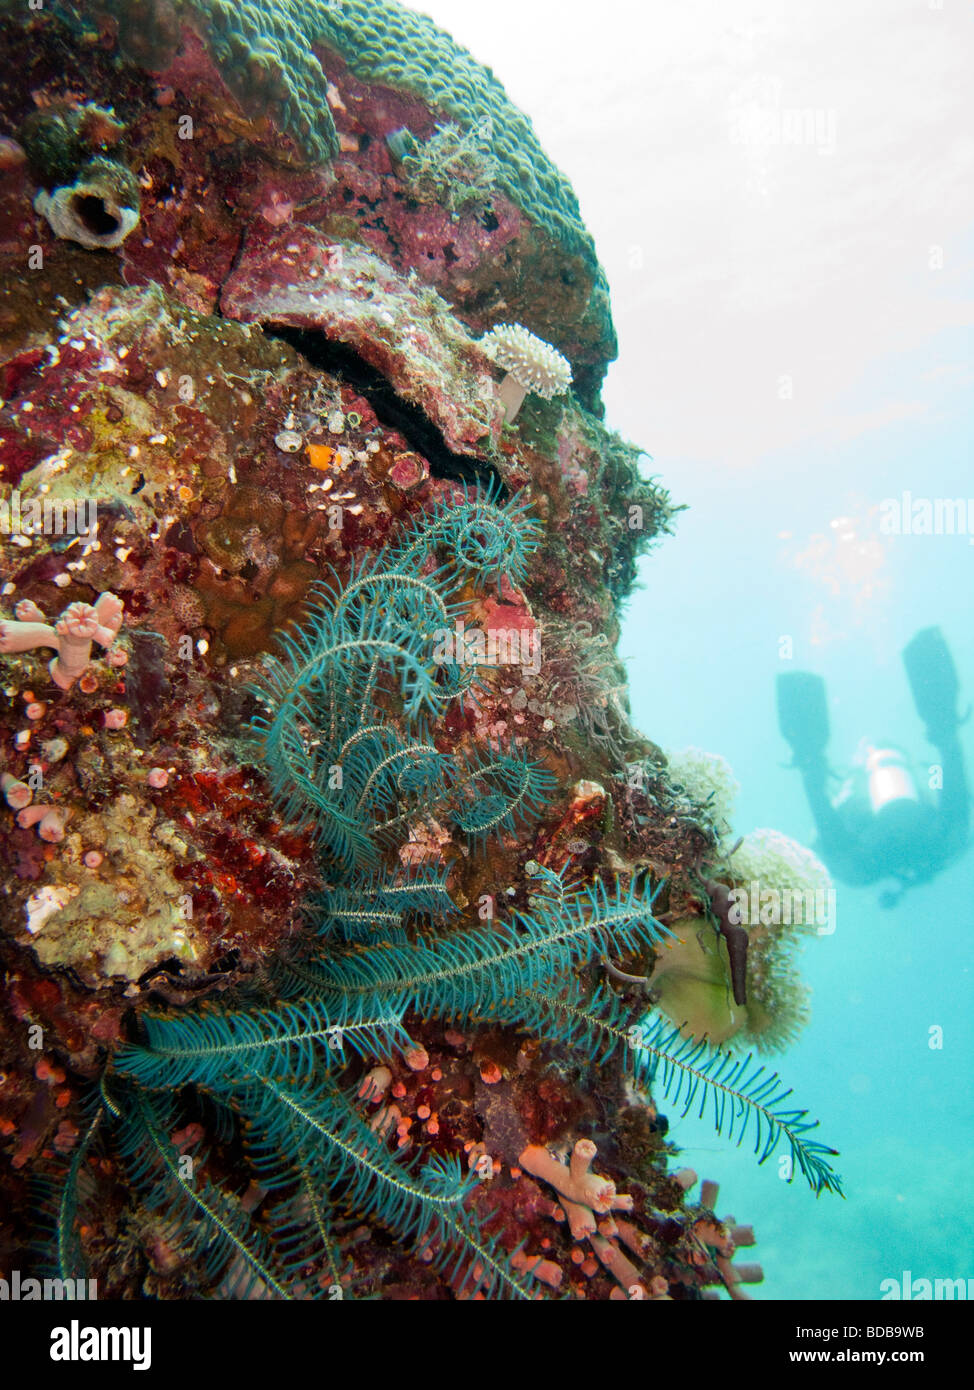 Indonesien Sulawesi Wakatobi Nationalpark Unterwasser blau Peitschenkorallen Feather Star am Korallenriff Stockfoto